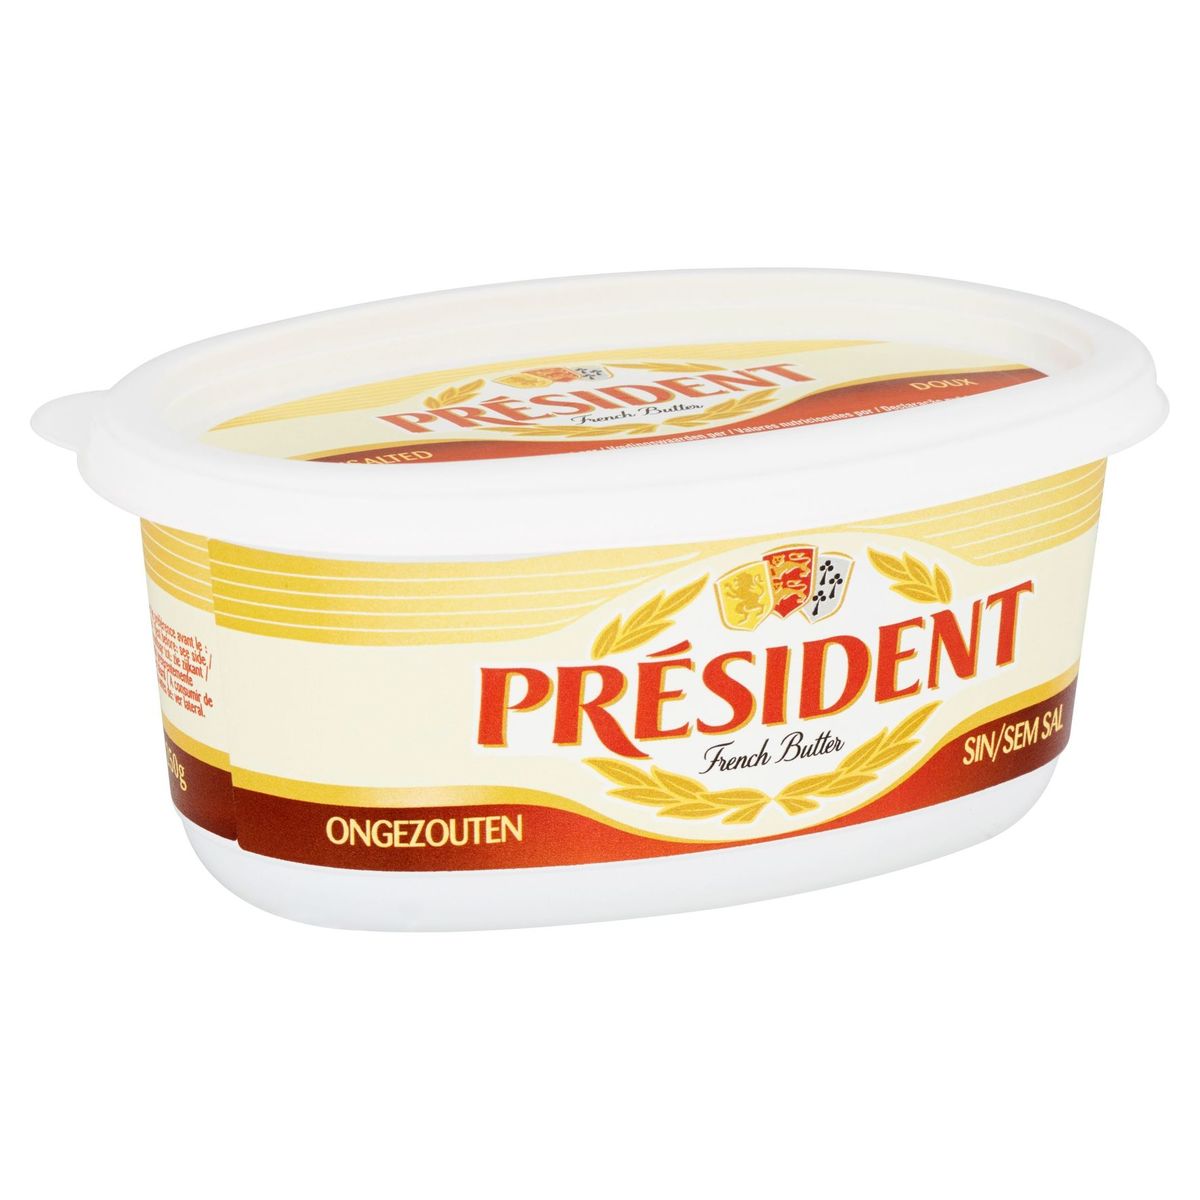 Président French Butter Ongezouten 250 g